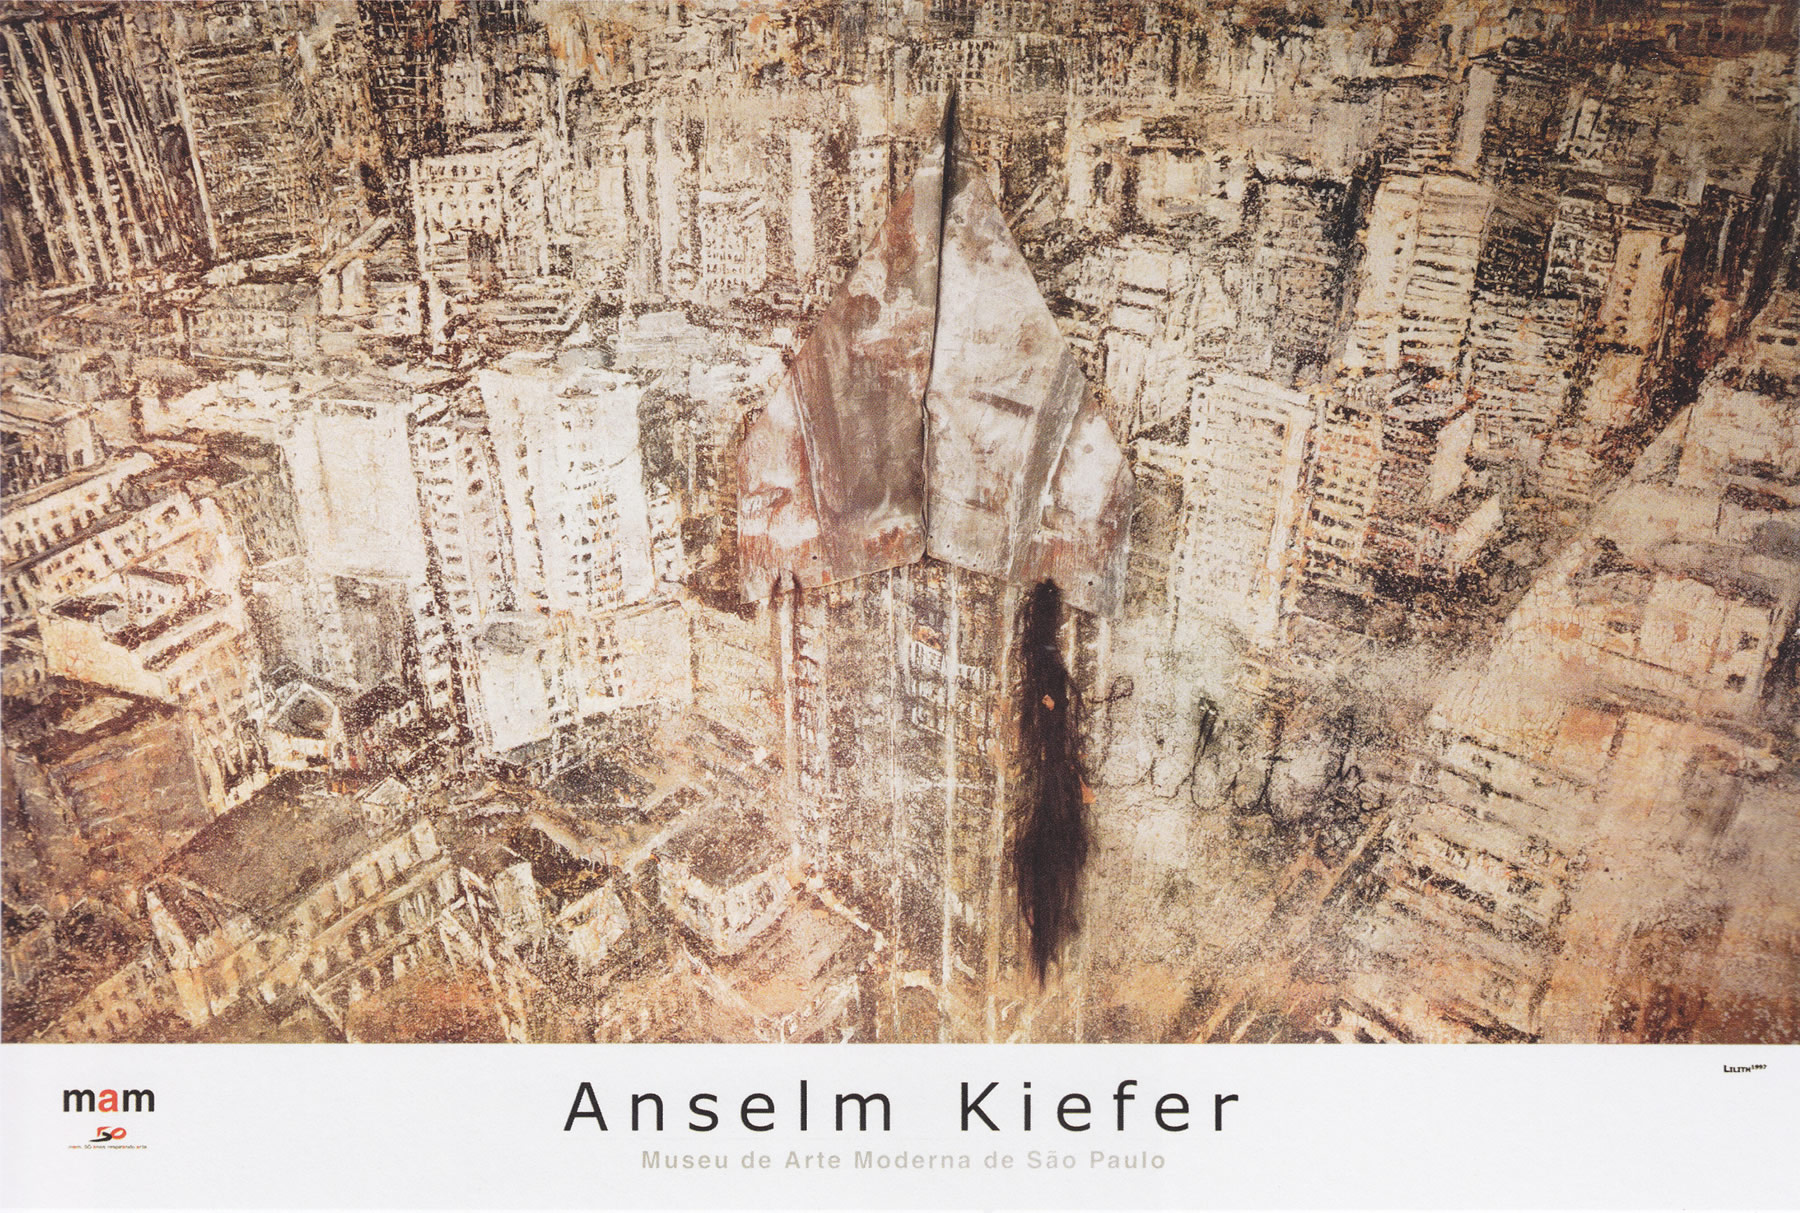 Anselm Kiefer. Museum de Arte Moderna de Sau Paulo. 1998